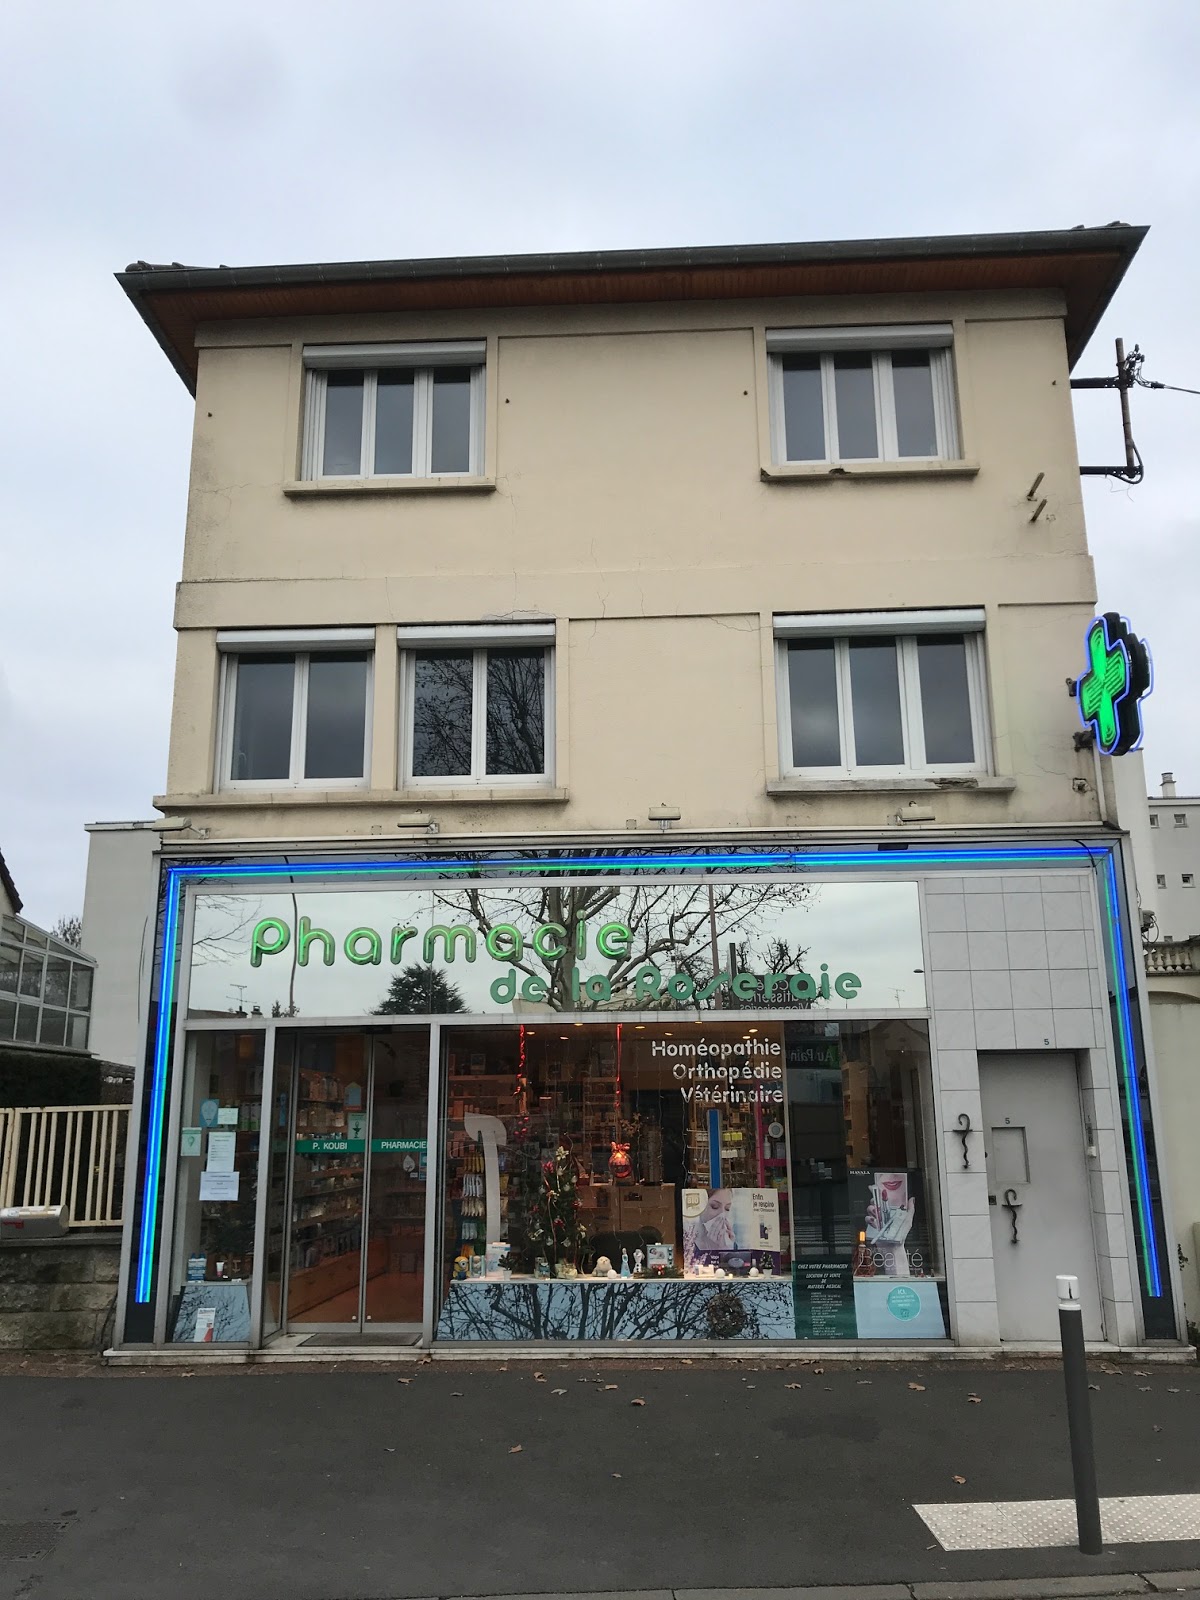 Pharmacie de la Roseraie